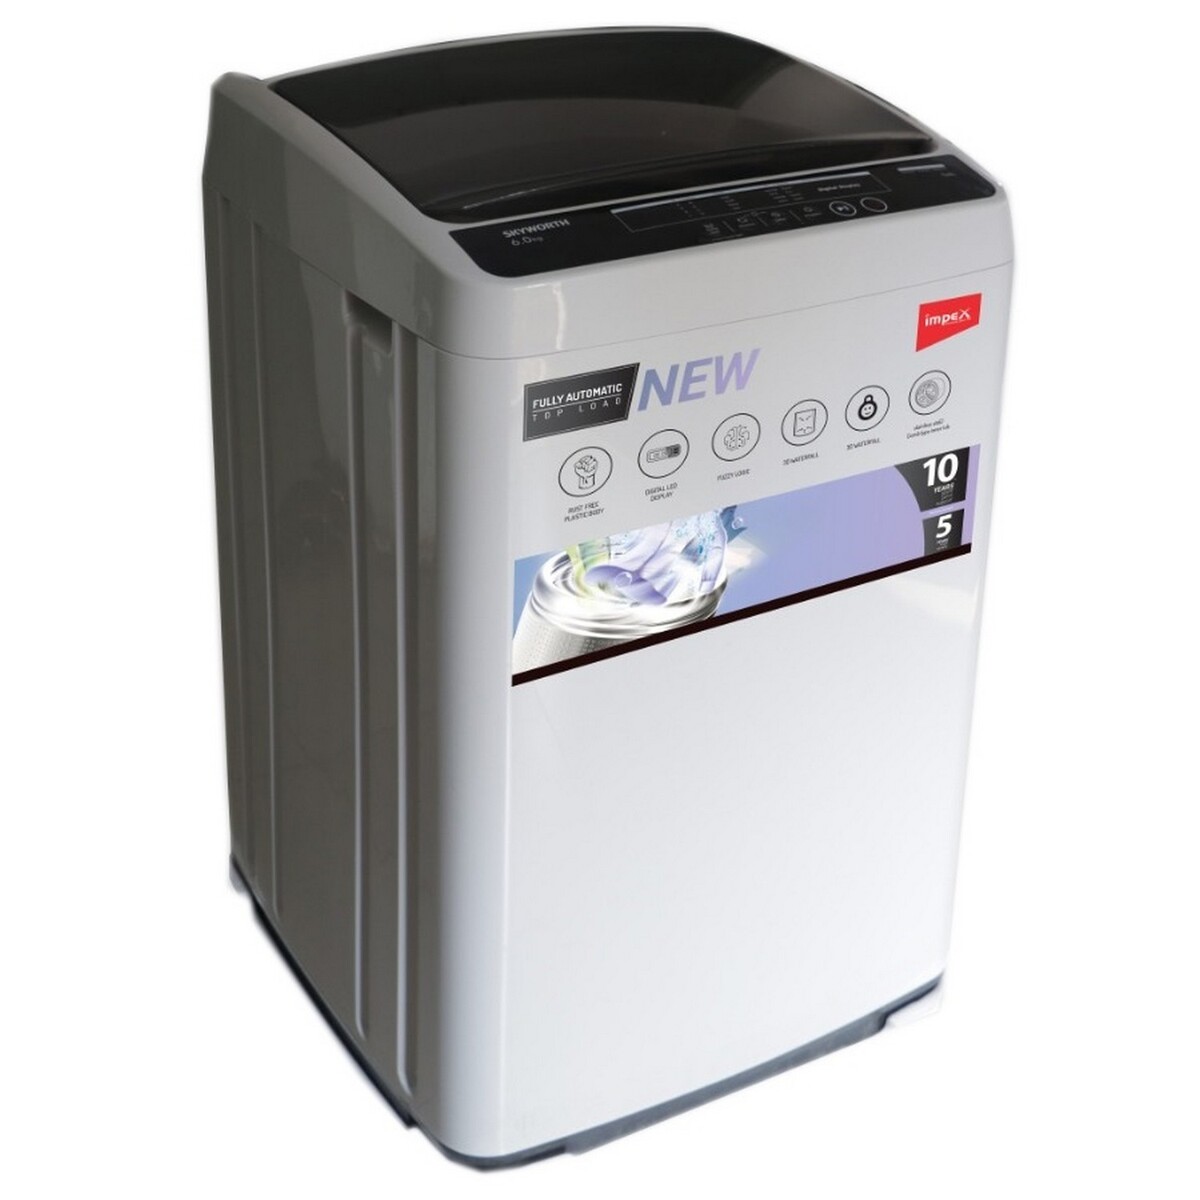 Impex Fully Automatic Washing Machine WM60FATL 6kg